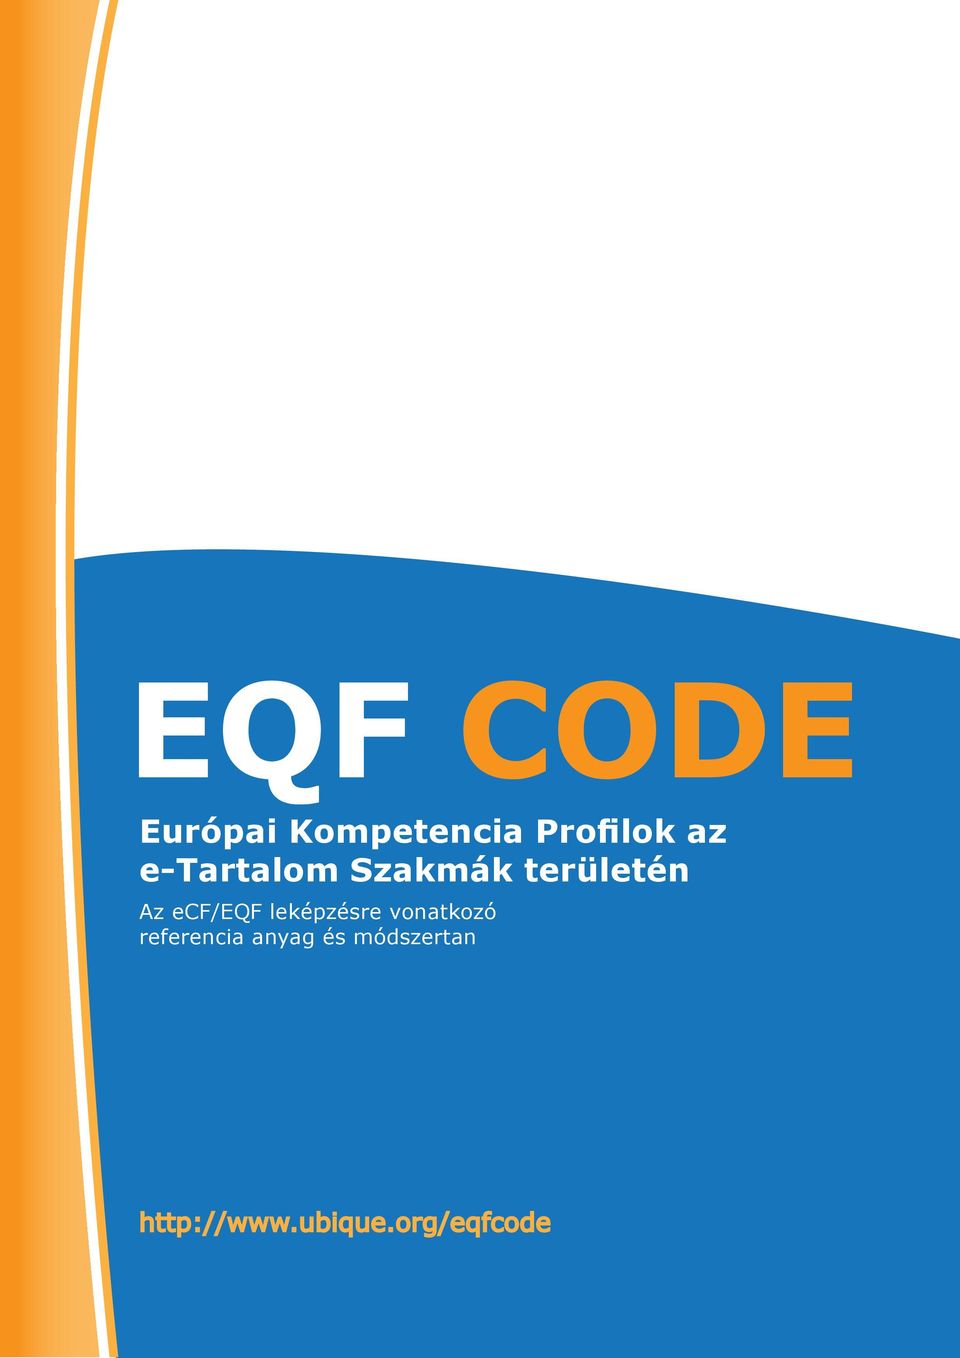 ecf/eqf leképzésre vonatkozó referencia